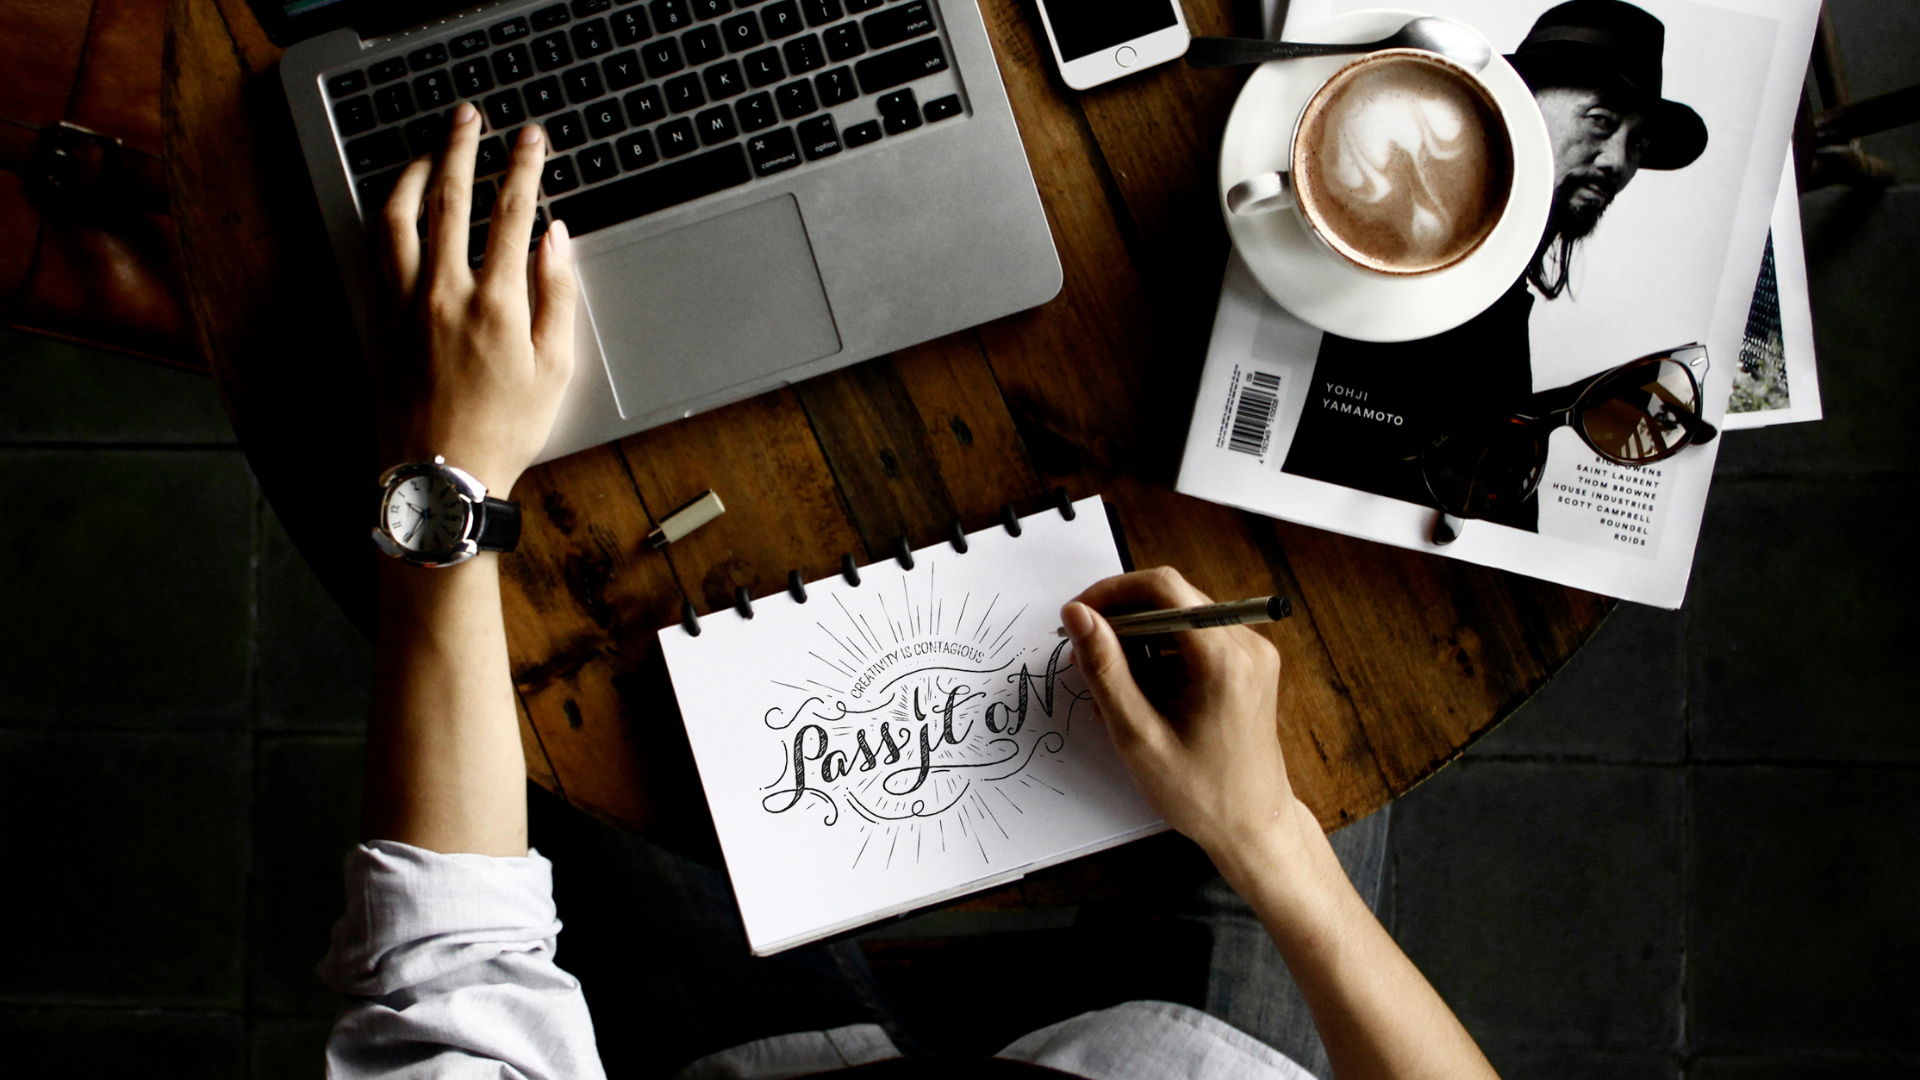 Person gestaltet kreatives Lettering in einem Notizbuch mit dem Slogan 'Pass it on', neben einem Laptop und Design-Inspirationen, im Kontext der Findung eines Unternehmensnamens.